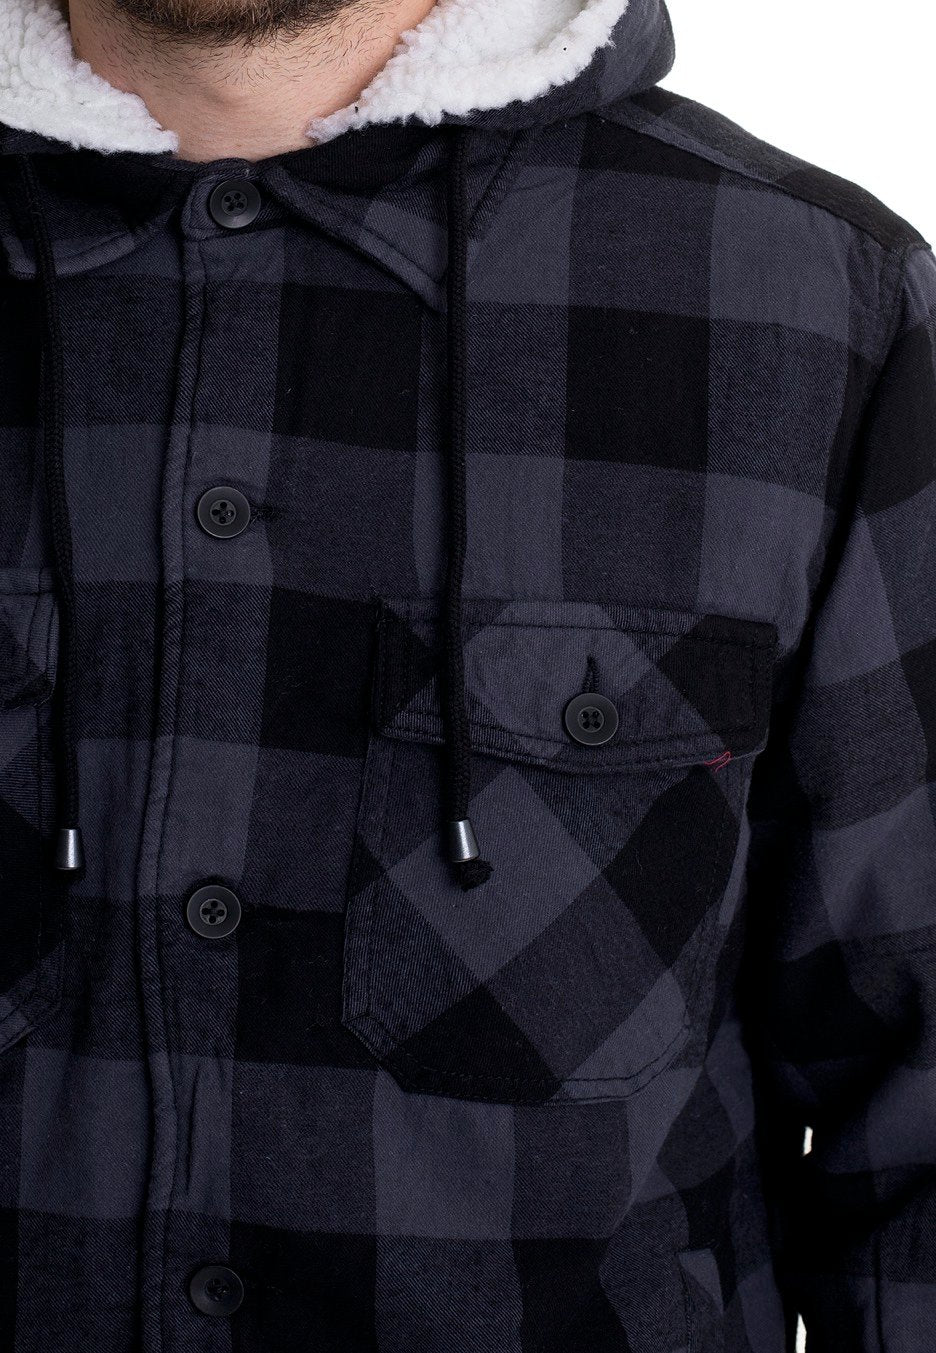 Brandit - Lumberjacket Hooded Black/Grey - Jacket